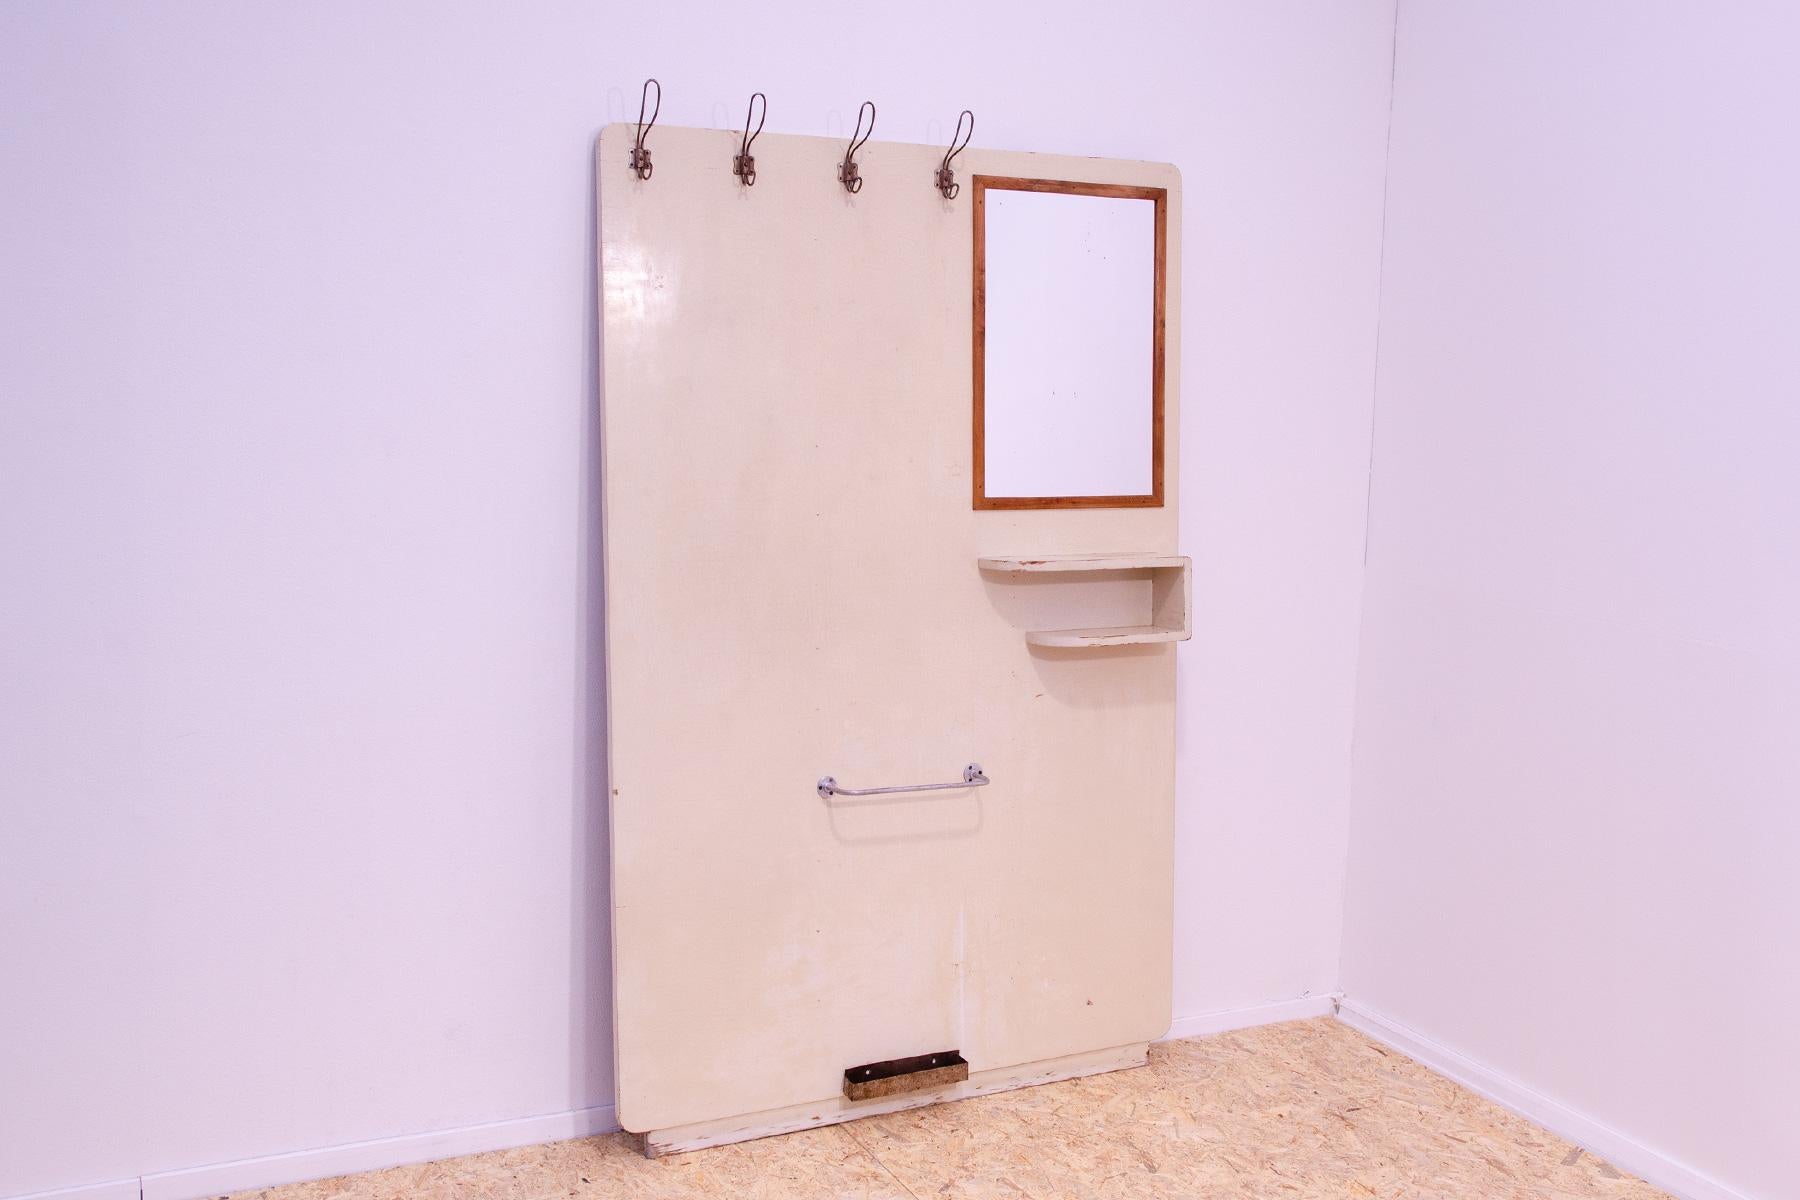 Dieser Garderobenständer wurde in den 1930er Jahren in der ehemaligen Tschechoslowakei hergestellt.

MATERIAL: Sperrholz, Holz, Metall. Er kann an der Wand montiert oder frei auf den Boden gelegt werden.

Der Garderobenständer ist in gutem